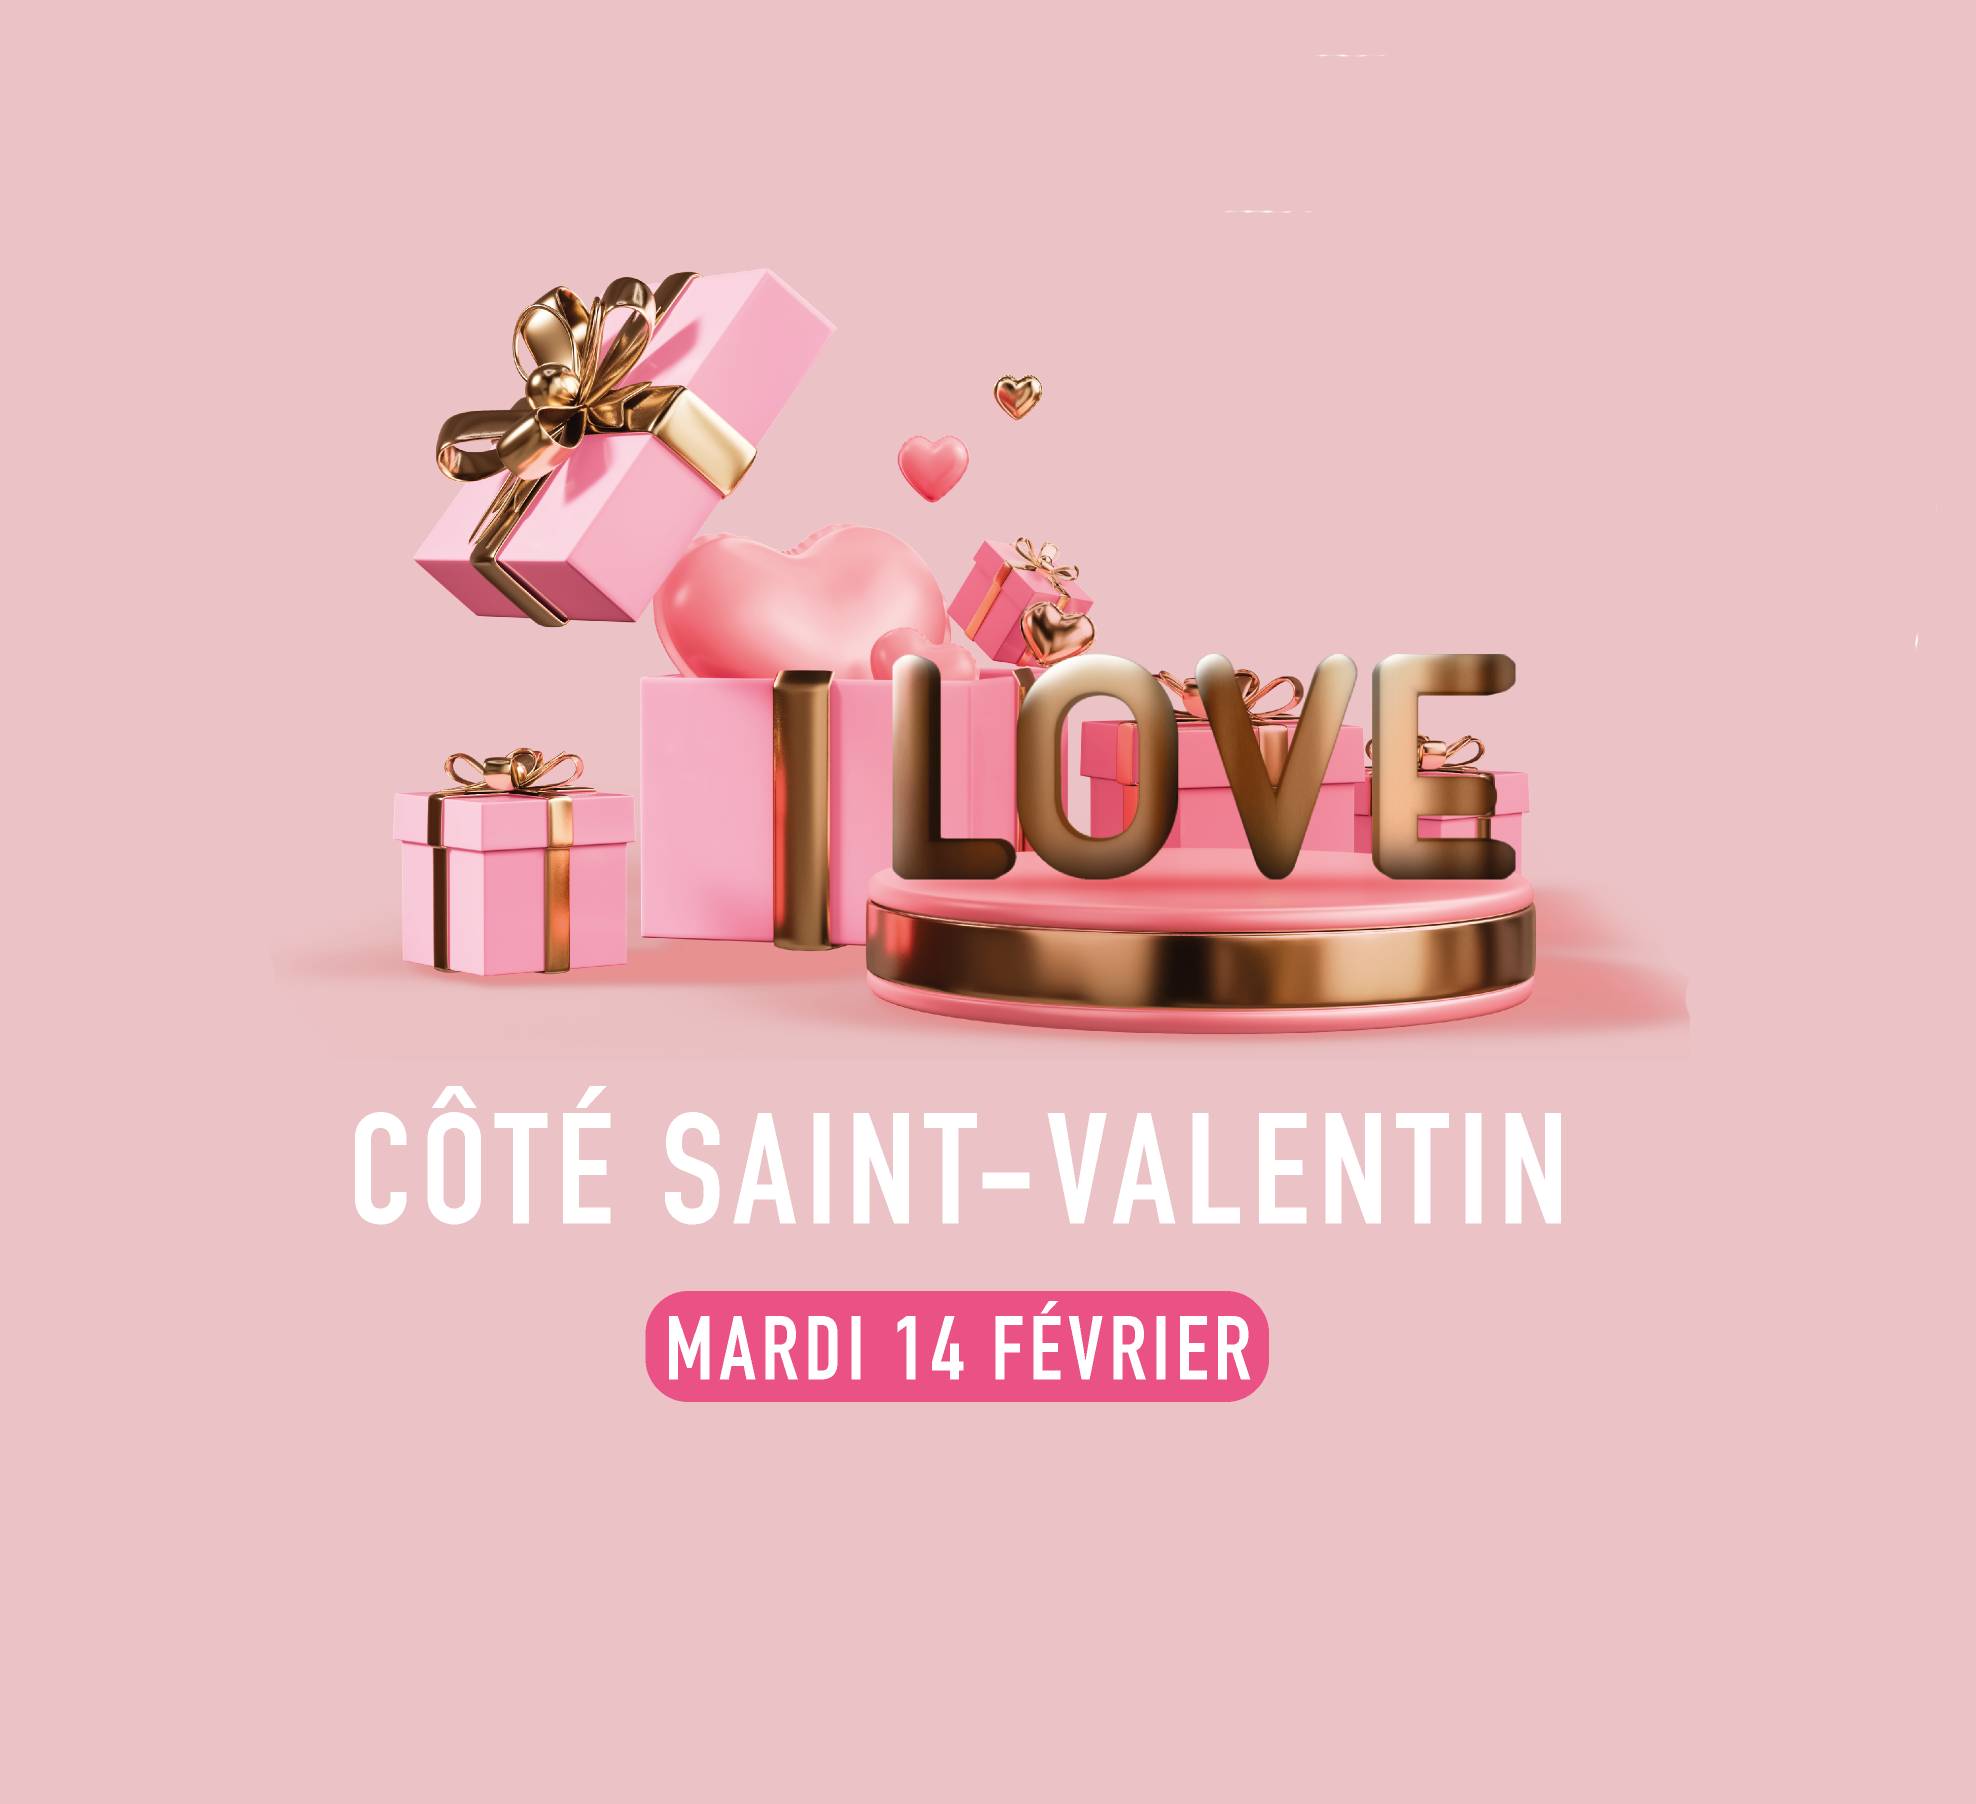 Venez fêter la Saint Valentin chez Côté Seine